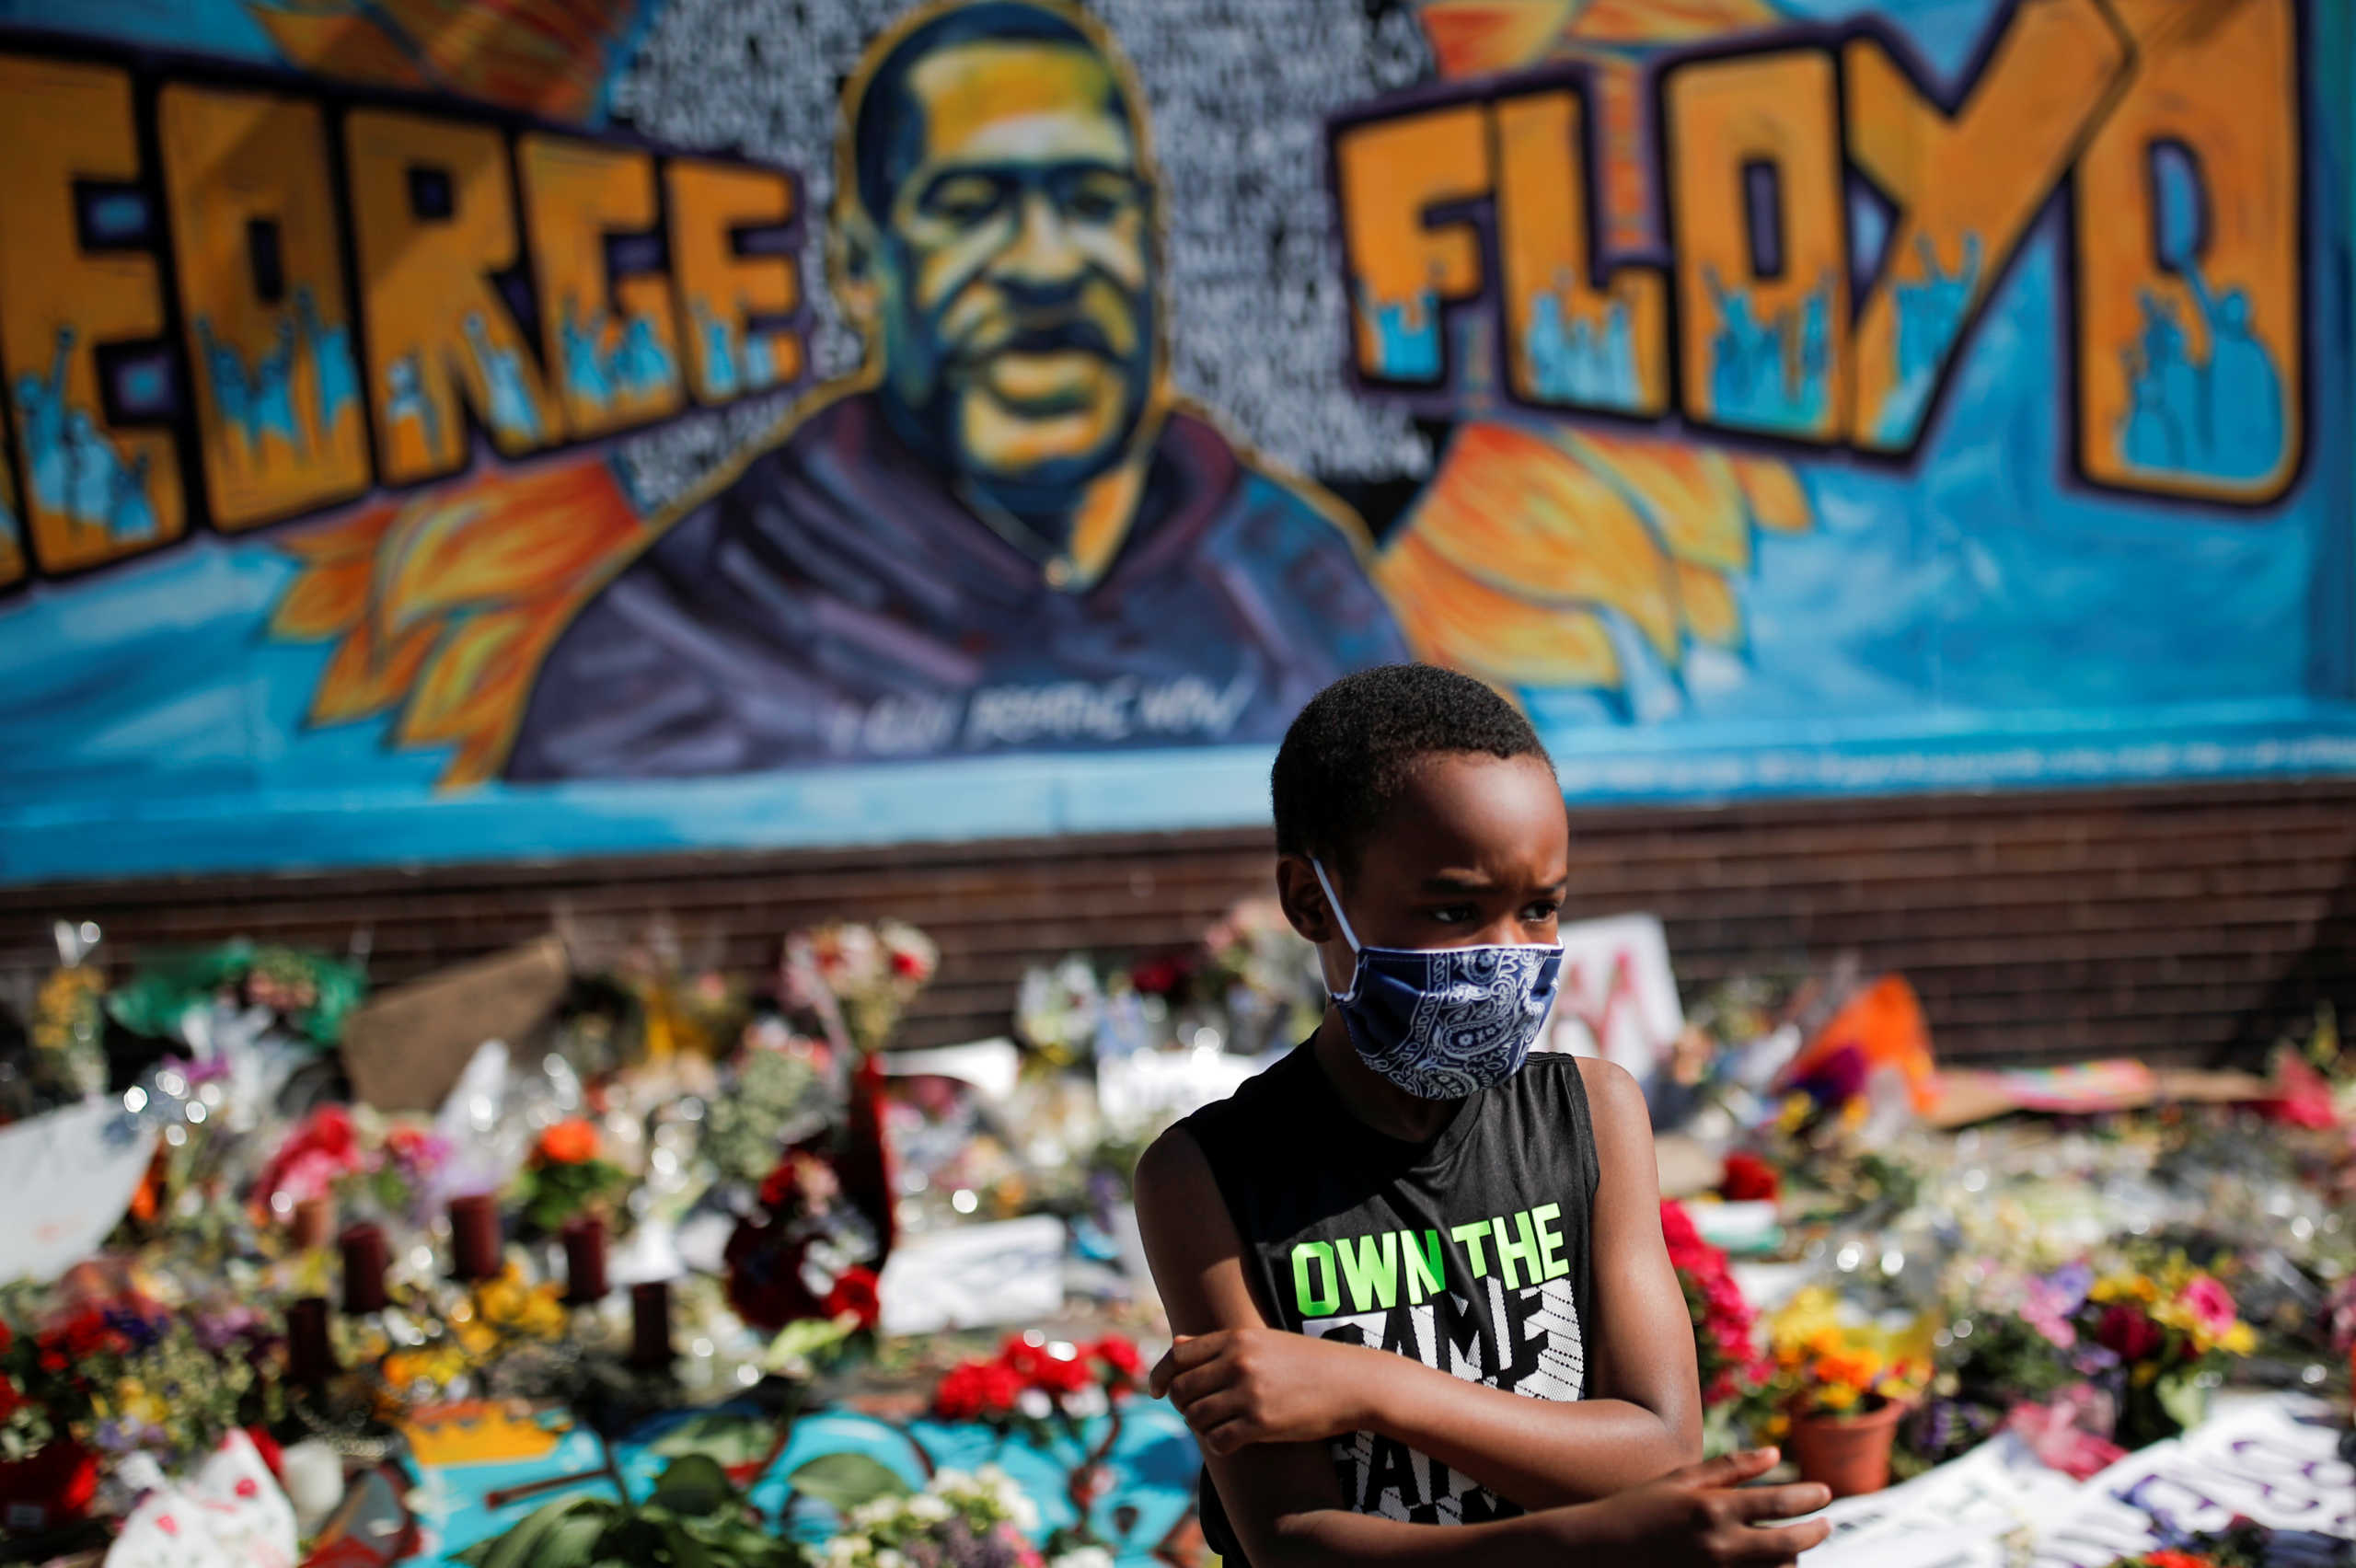 Δολοφονία Φλόιντ: Ο ρατσιστικός σχολιασμός των διαδηλώσεων από την αμερικανική τηλεόραση- Ποιος ευθύνεται για τις λεηλασίες